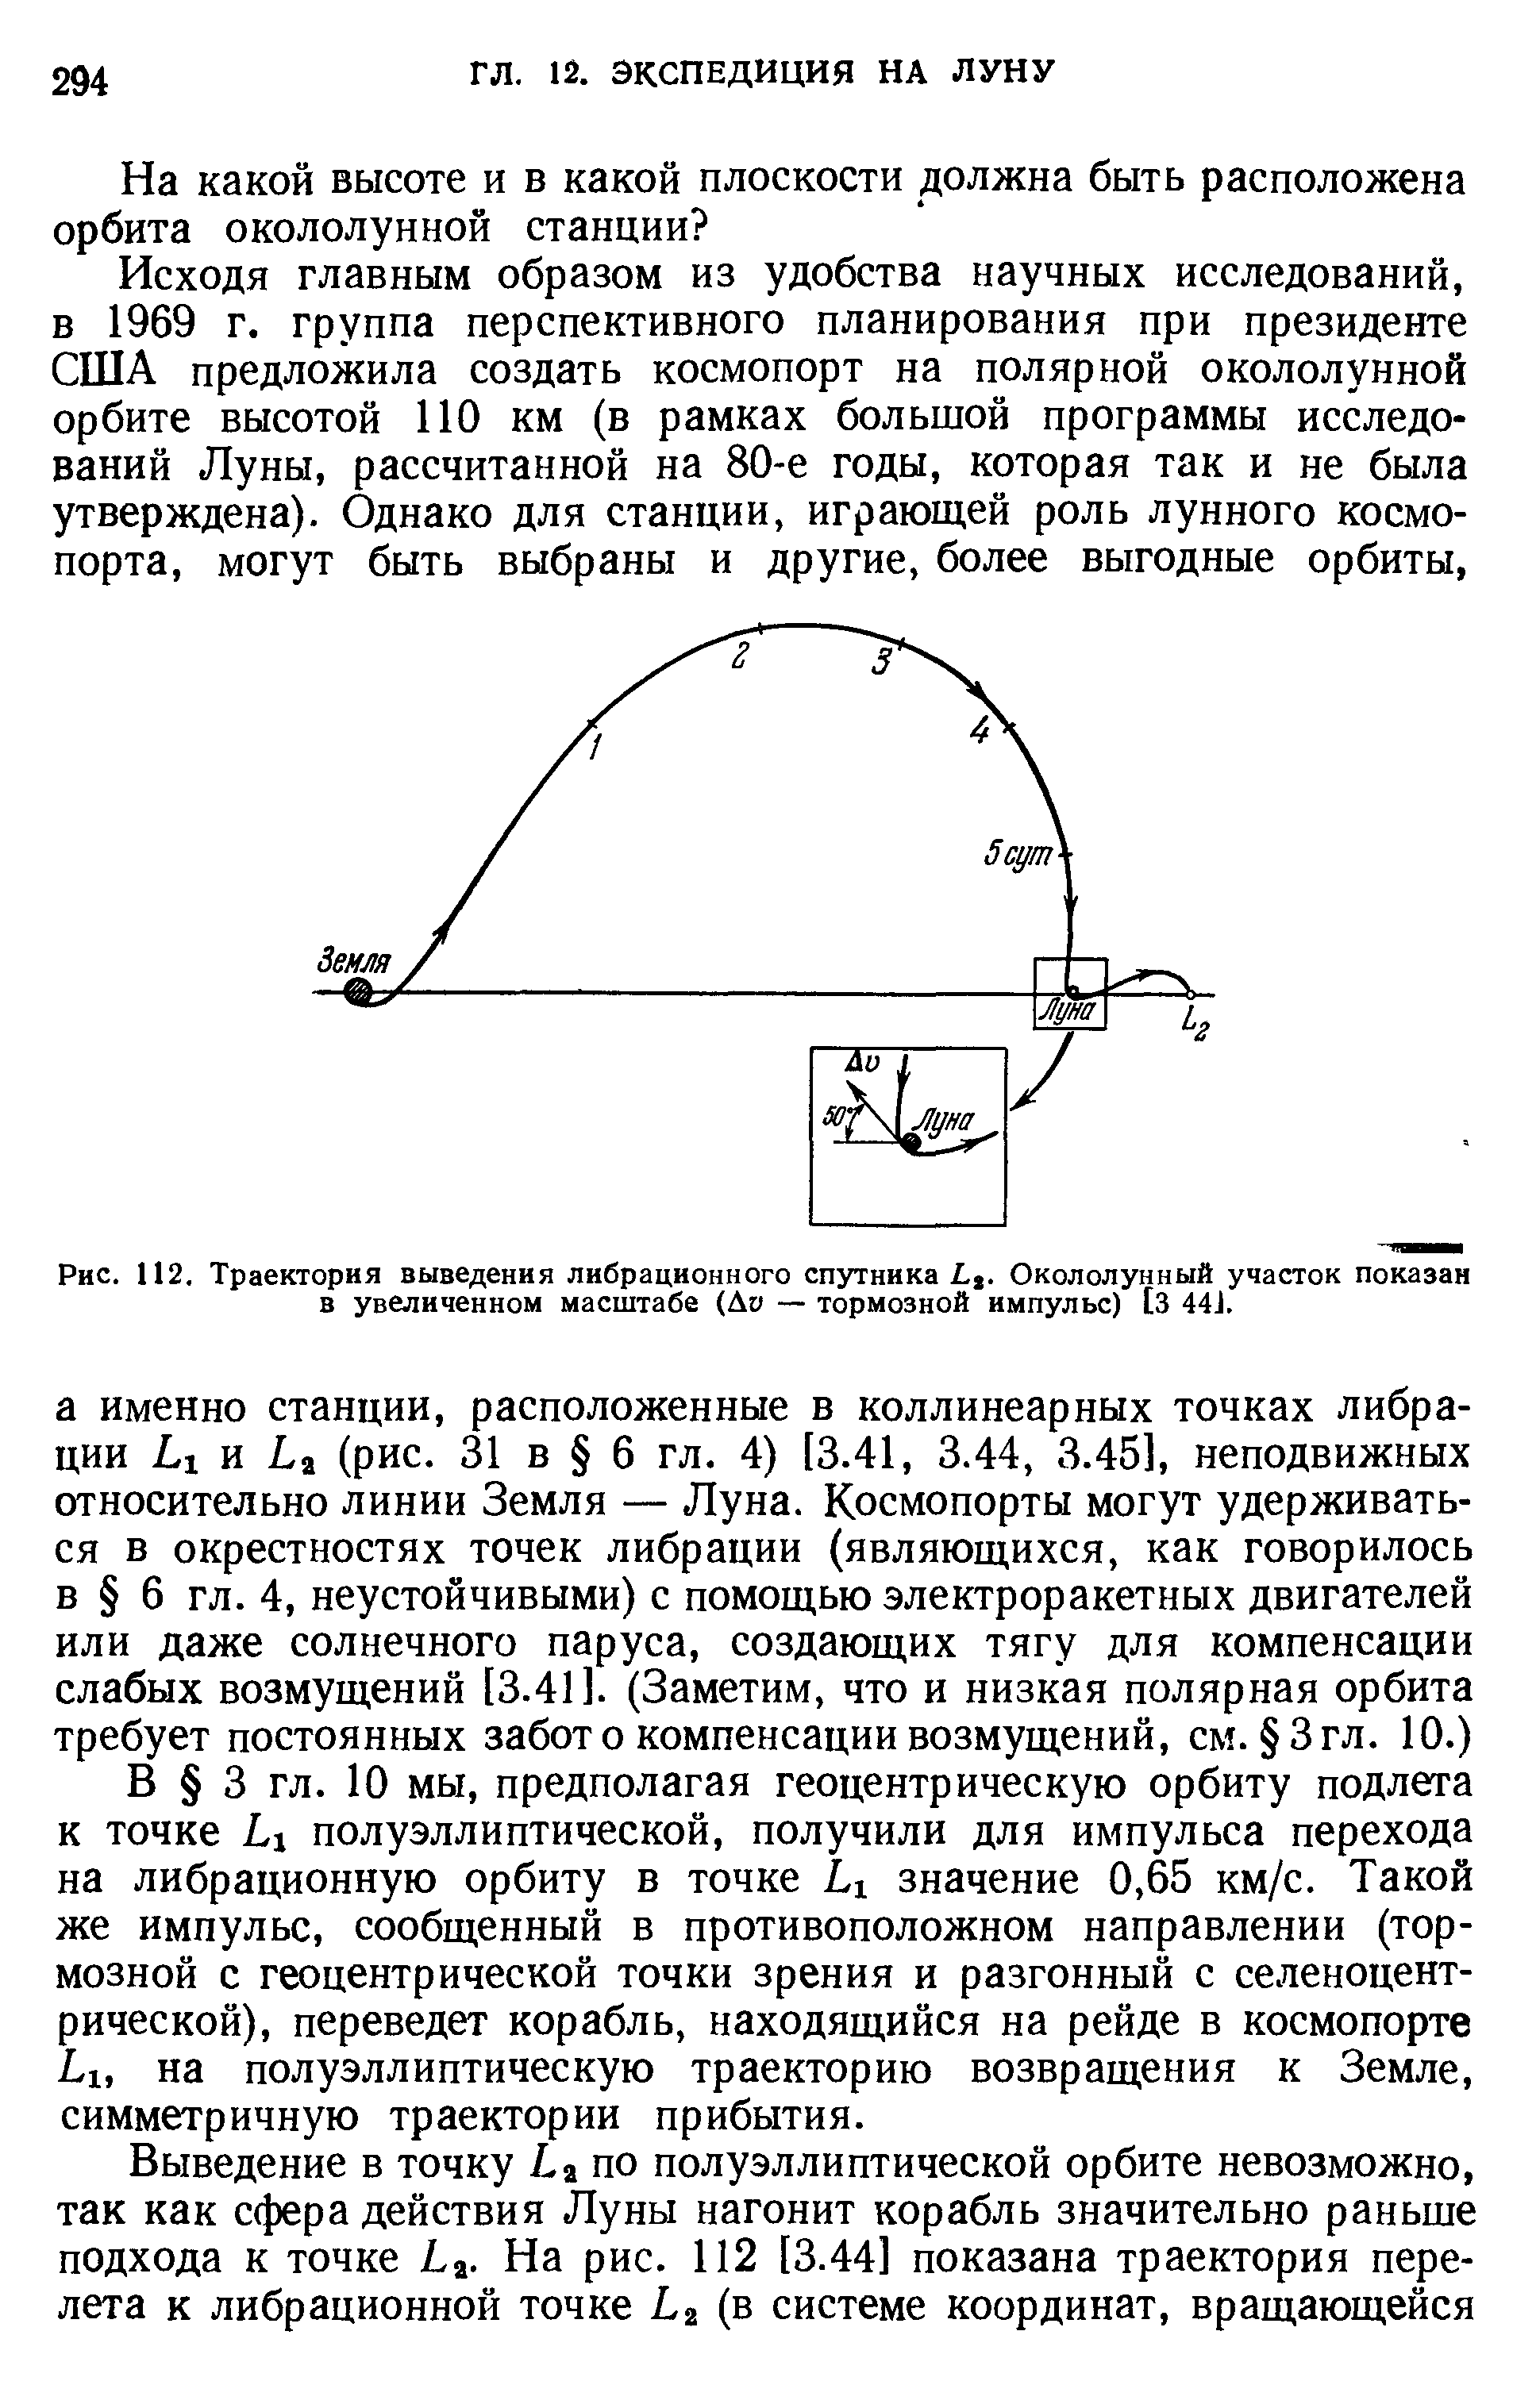 Рис. 112. <a href="/info/365351">Траектория выведения</a> либрационного спутника Окололунный участок показан в увеличенном масштабе Av — тормозной импульс) [З 441.
